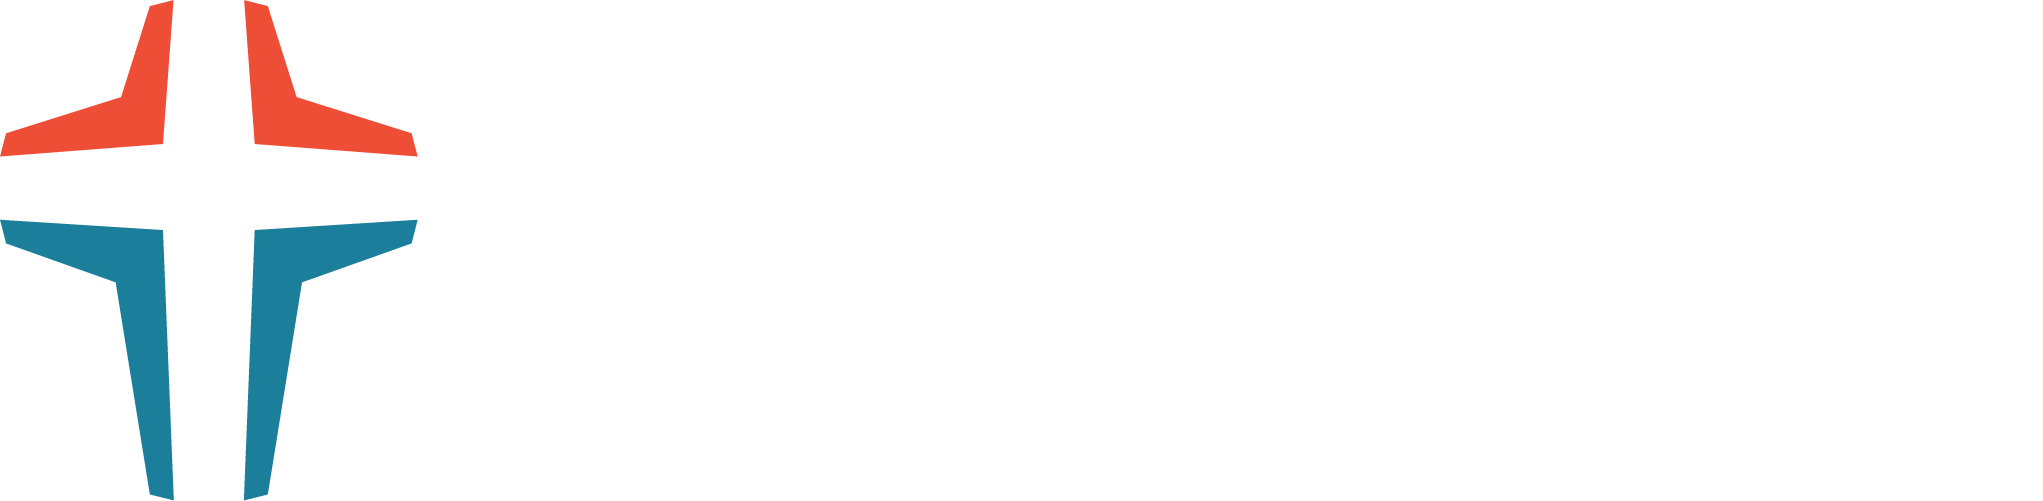 Fellowship Dallas